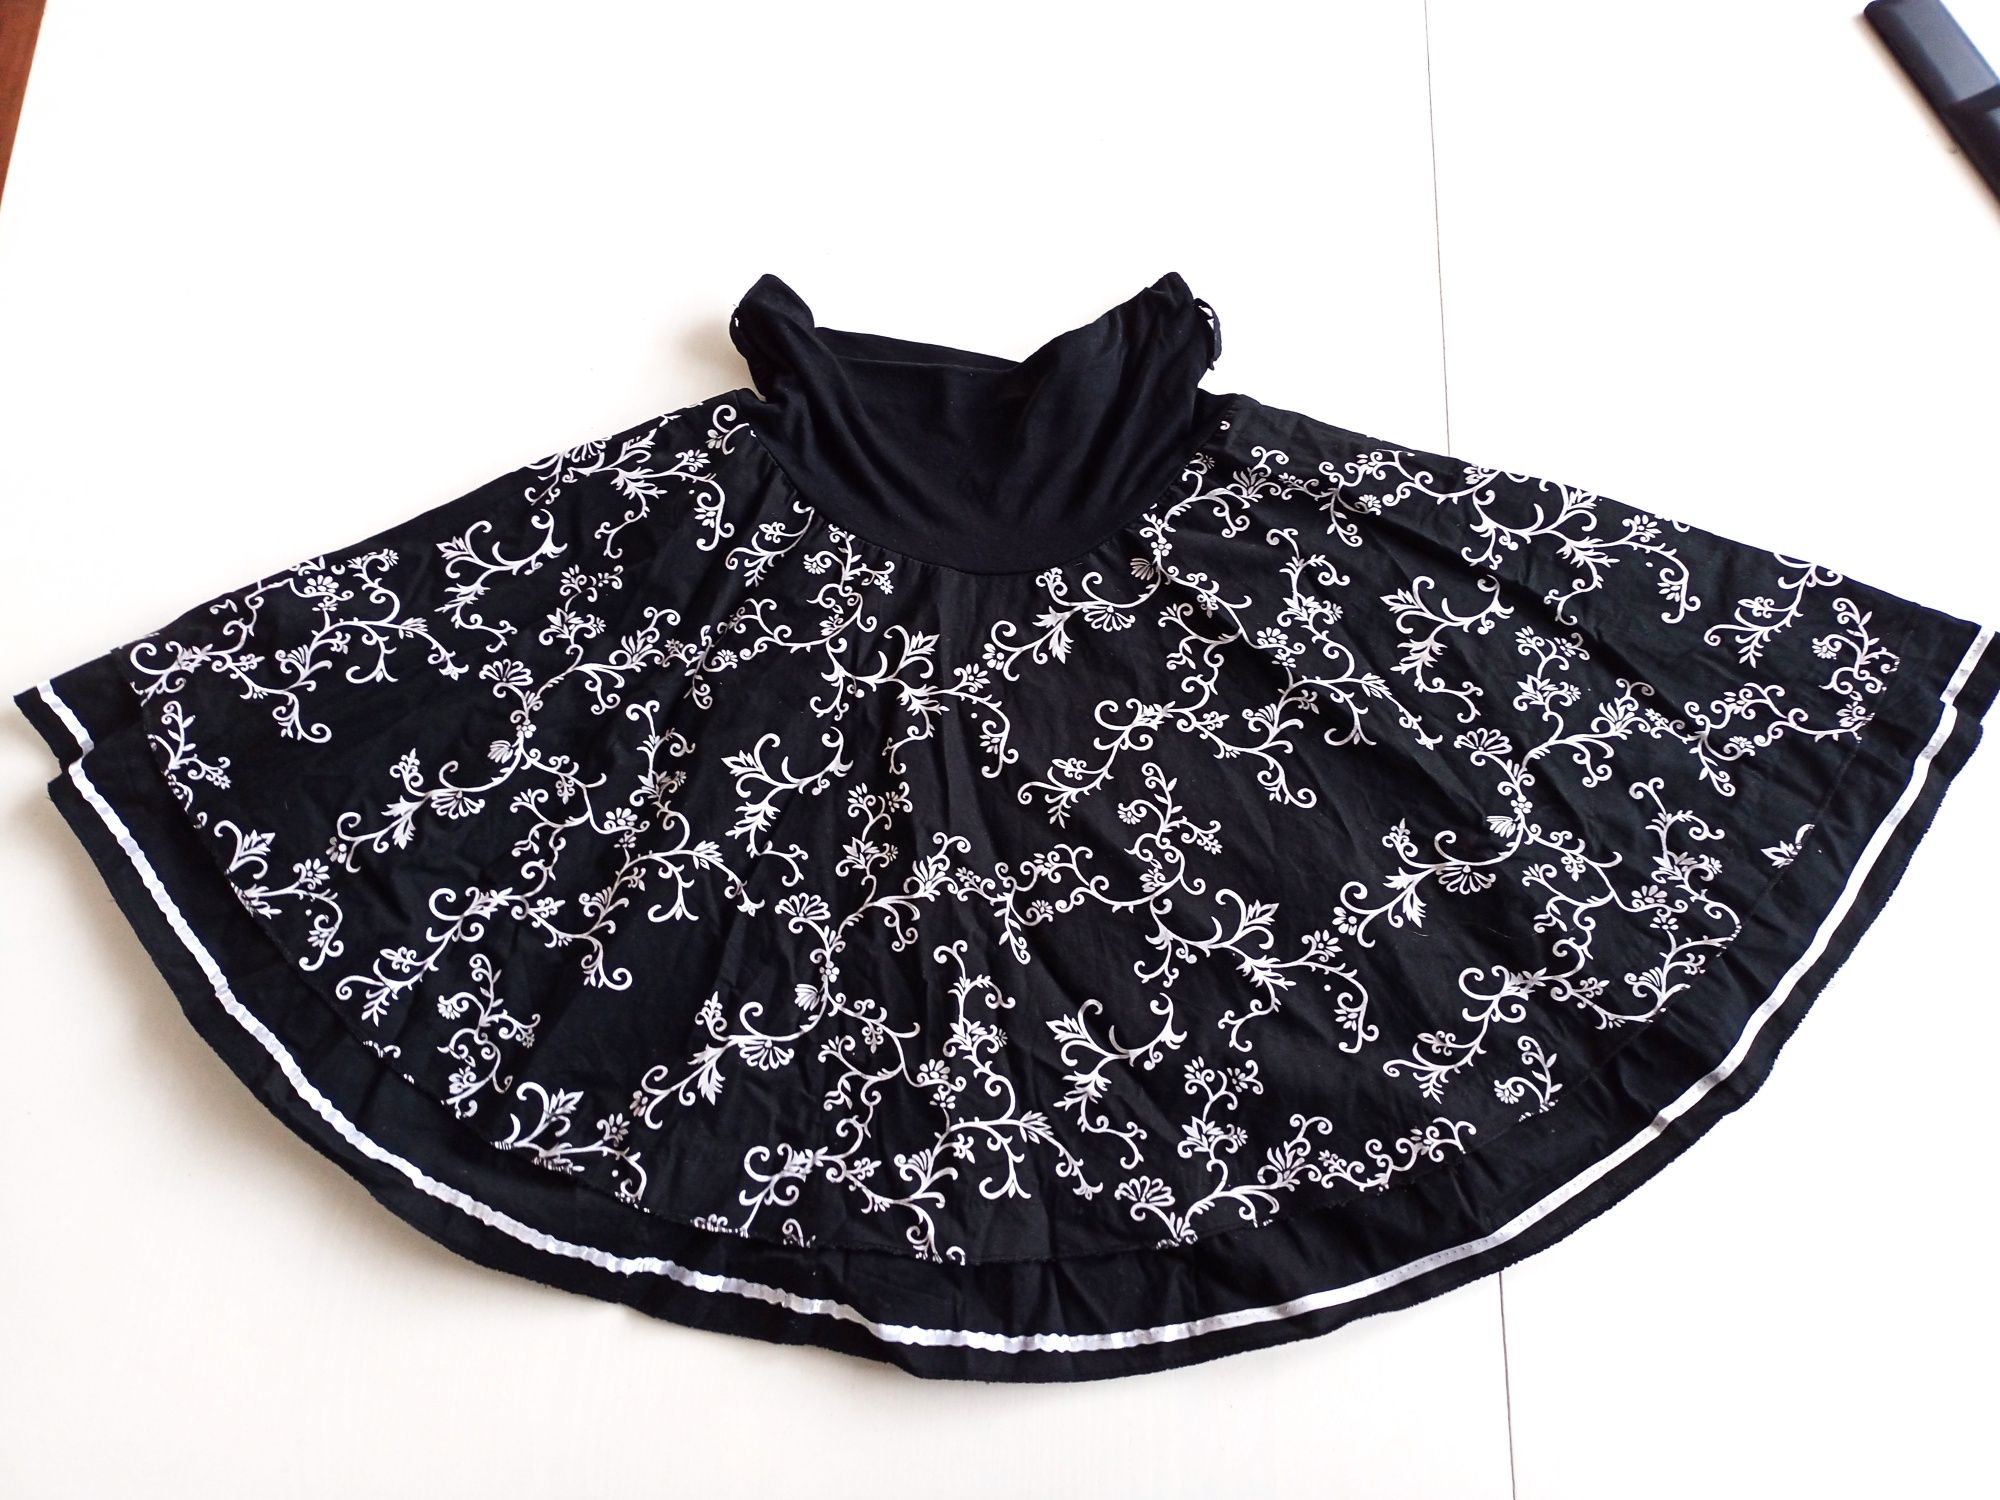 Spódnica rozkloszowana M/38 czarna w kwiatowy wzór #1397